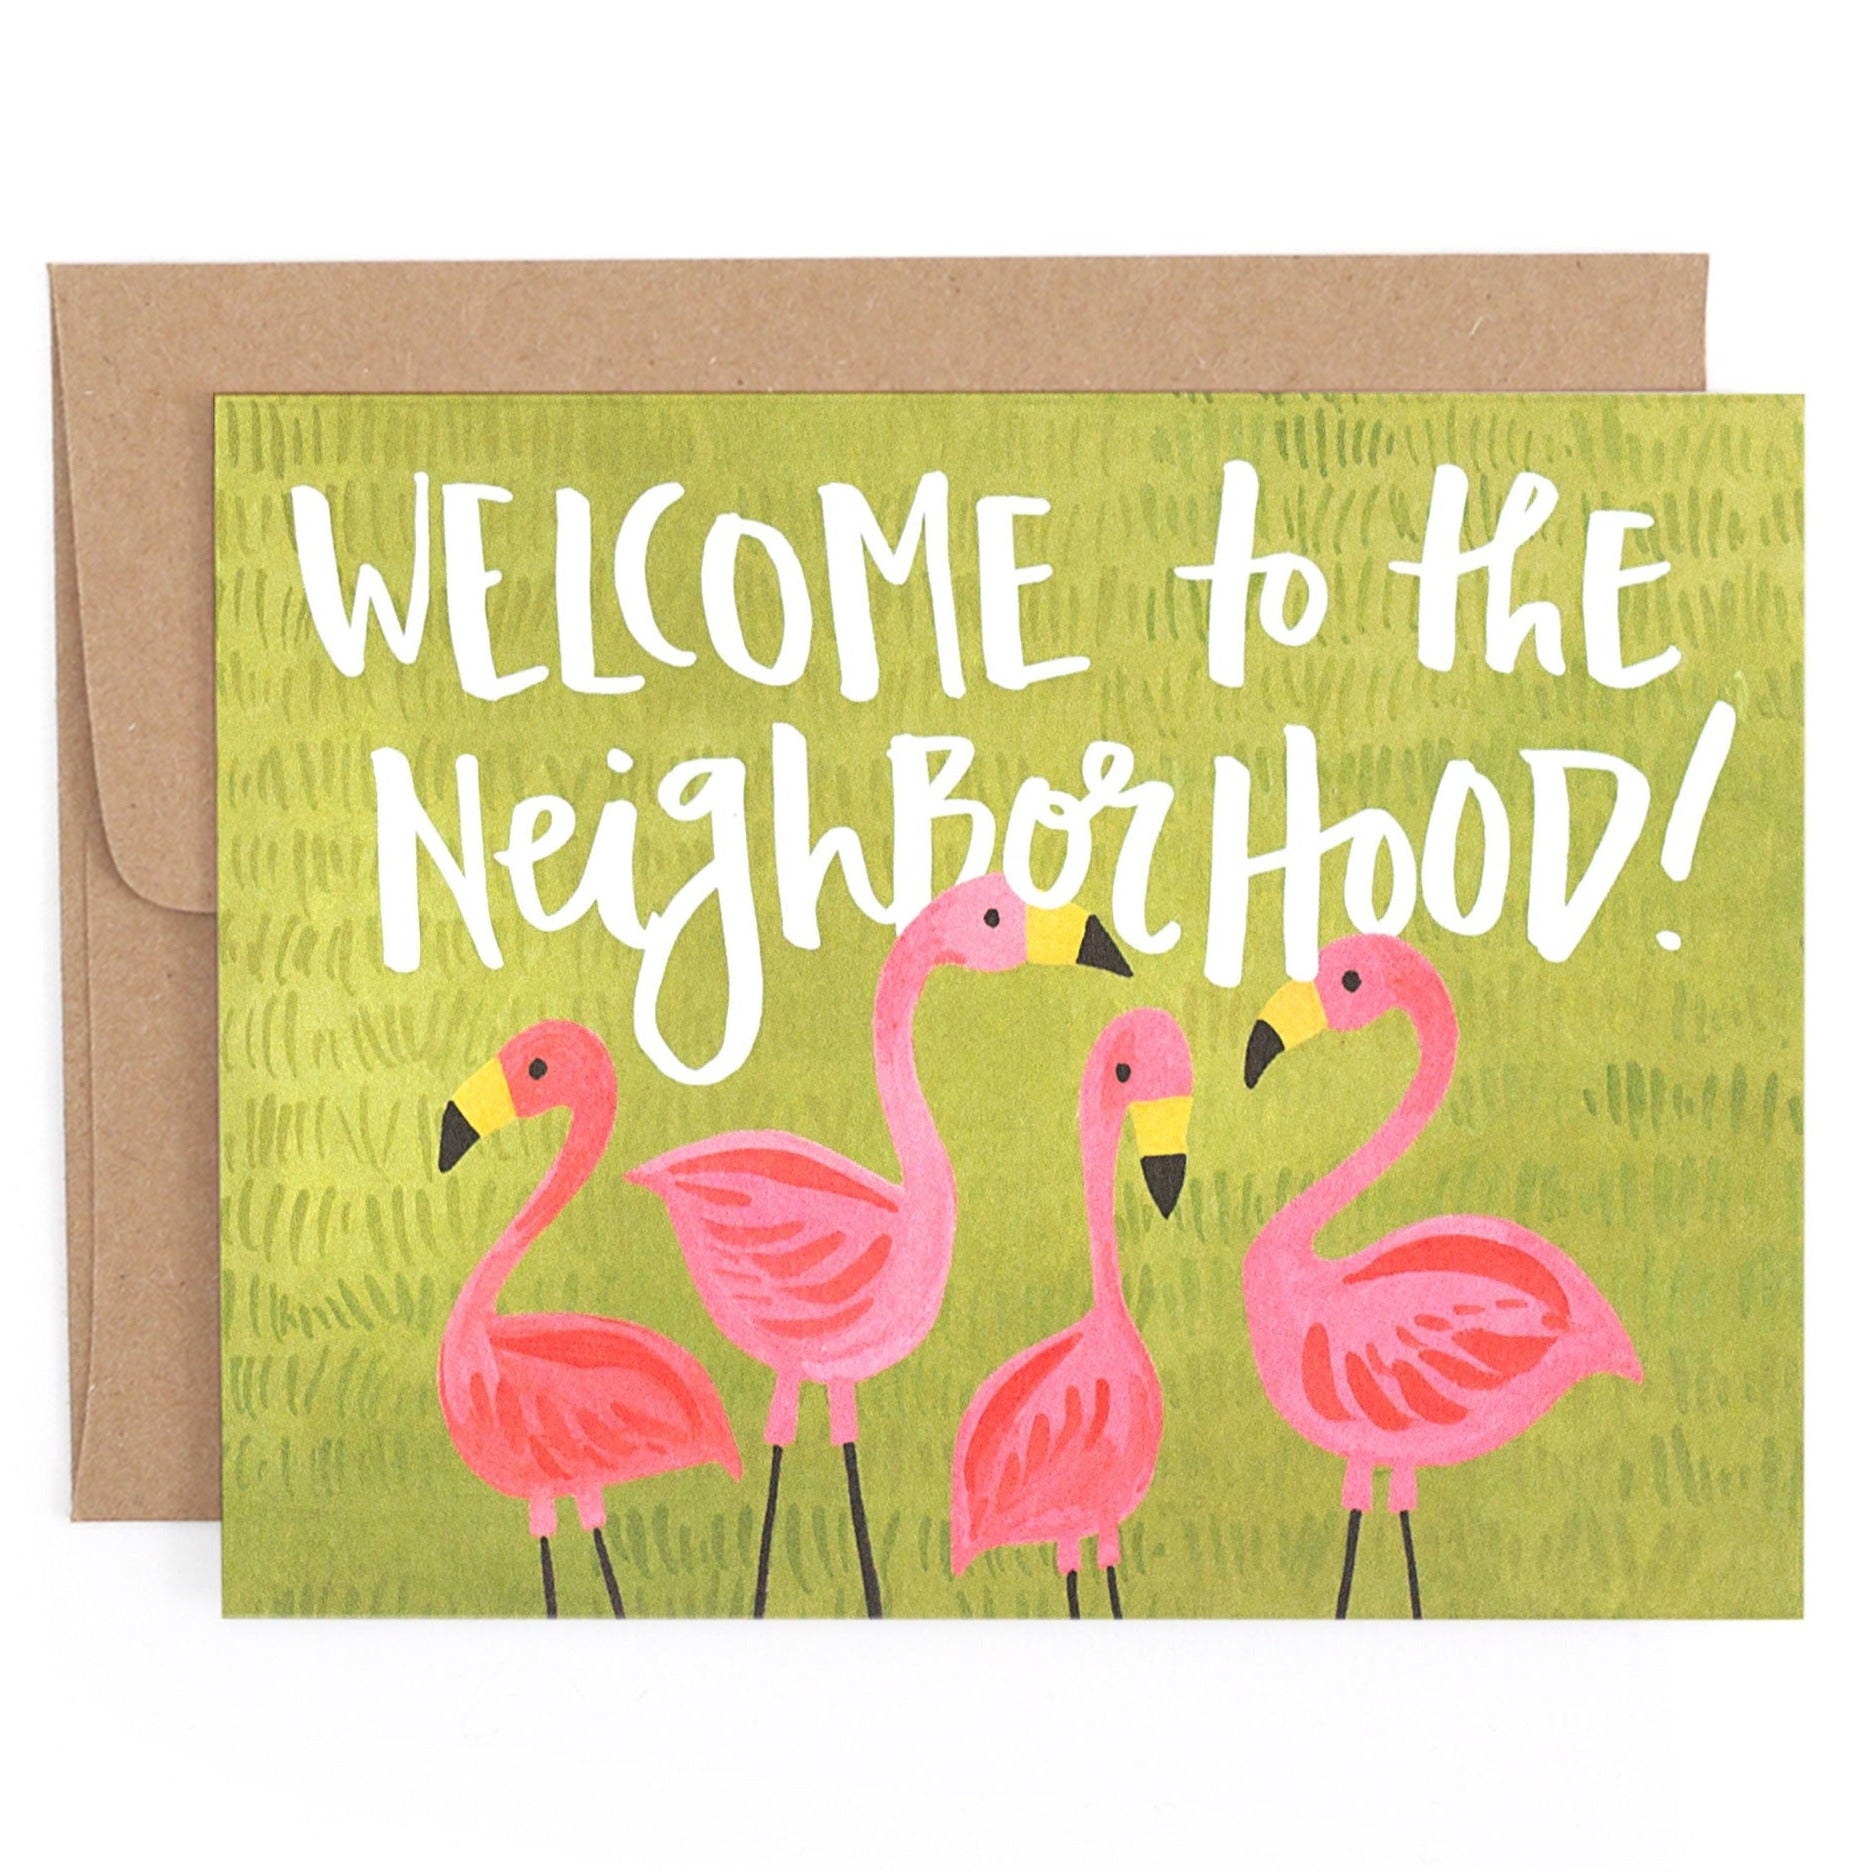 Flamingo Neighborhood Card